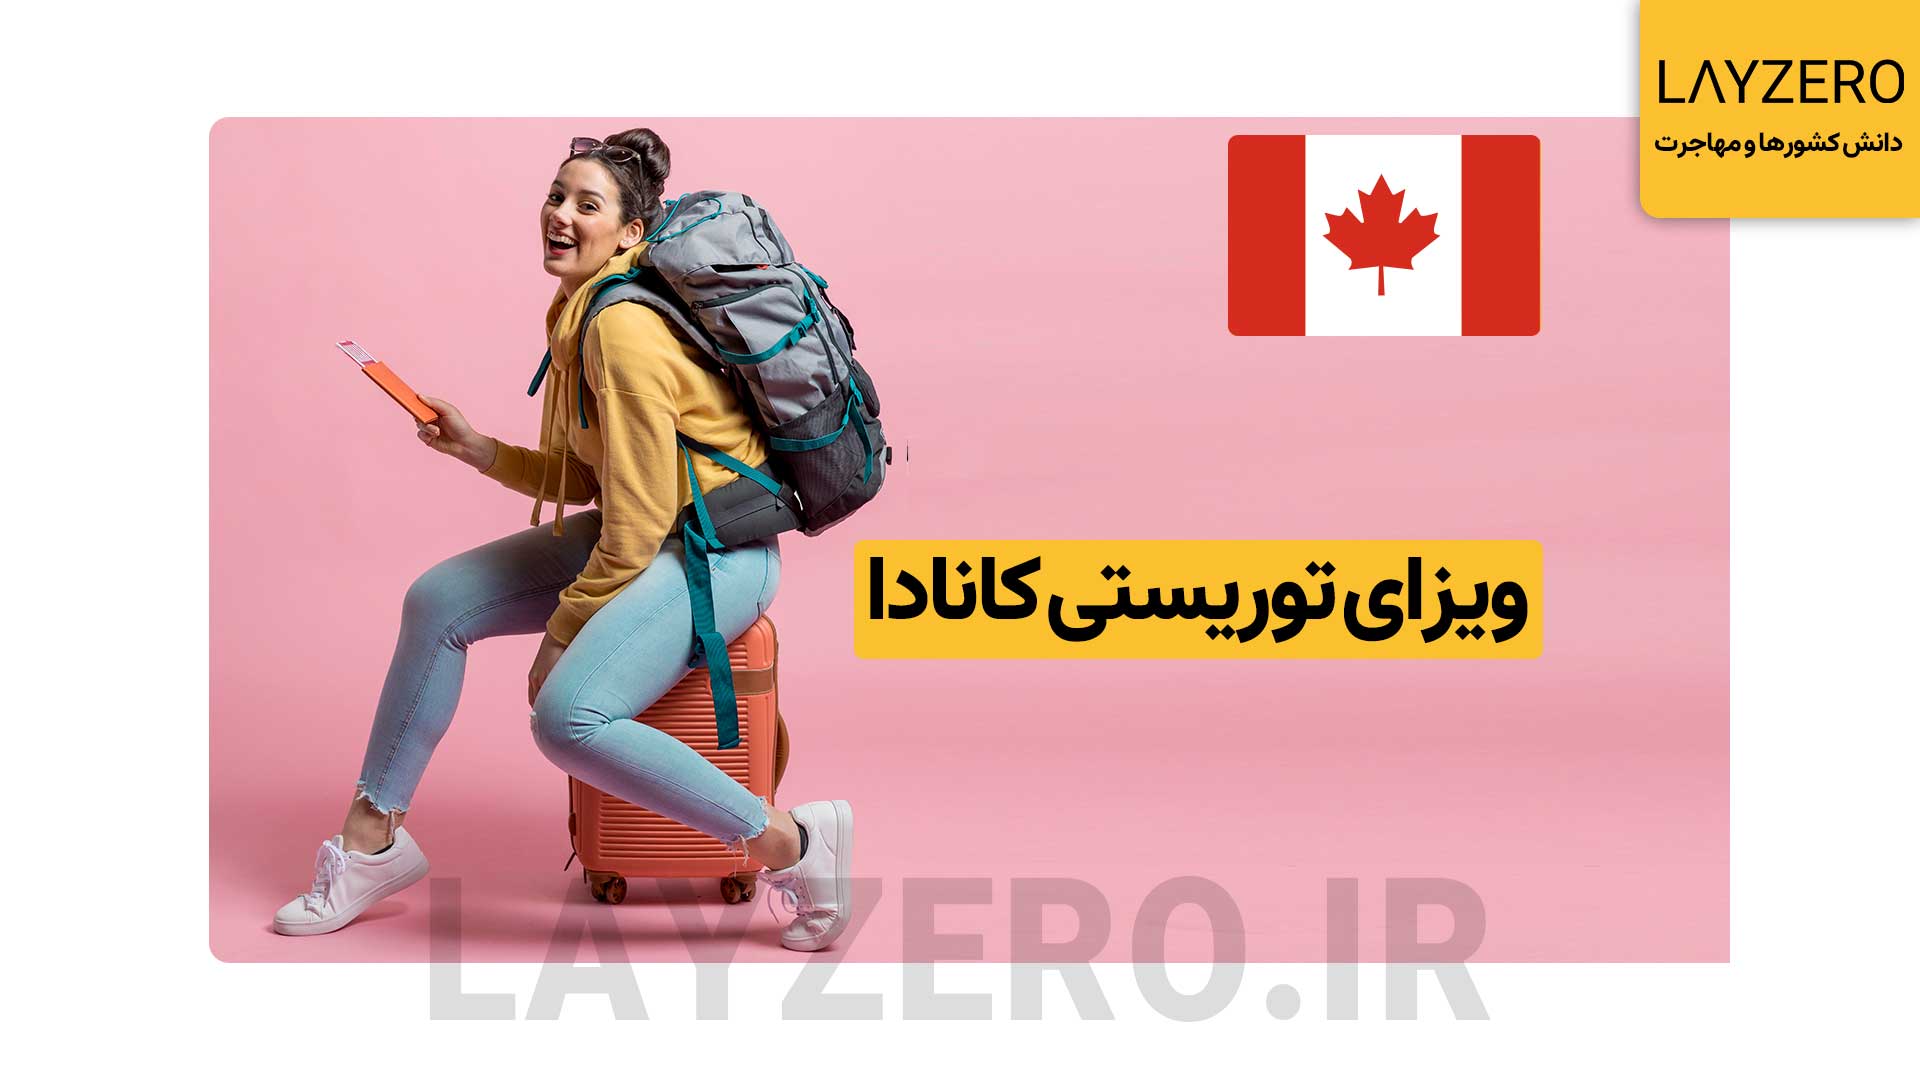 ویزای توریستی کانادا: شرایط مدارک، هزینه، با و بدون دعوتنامه ایرانیان برای ورود و اقامت در کشور کانادا نیاز به اخذ ویزا دارند. در سال گذشته، گرفتن ویزای توریستی کانادا (ویزیتور ویزا) بهترین راه برای مهاجرت ایرانیان به کانادا بوده است.